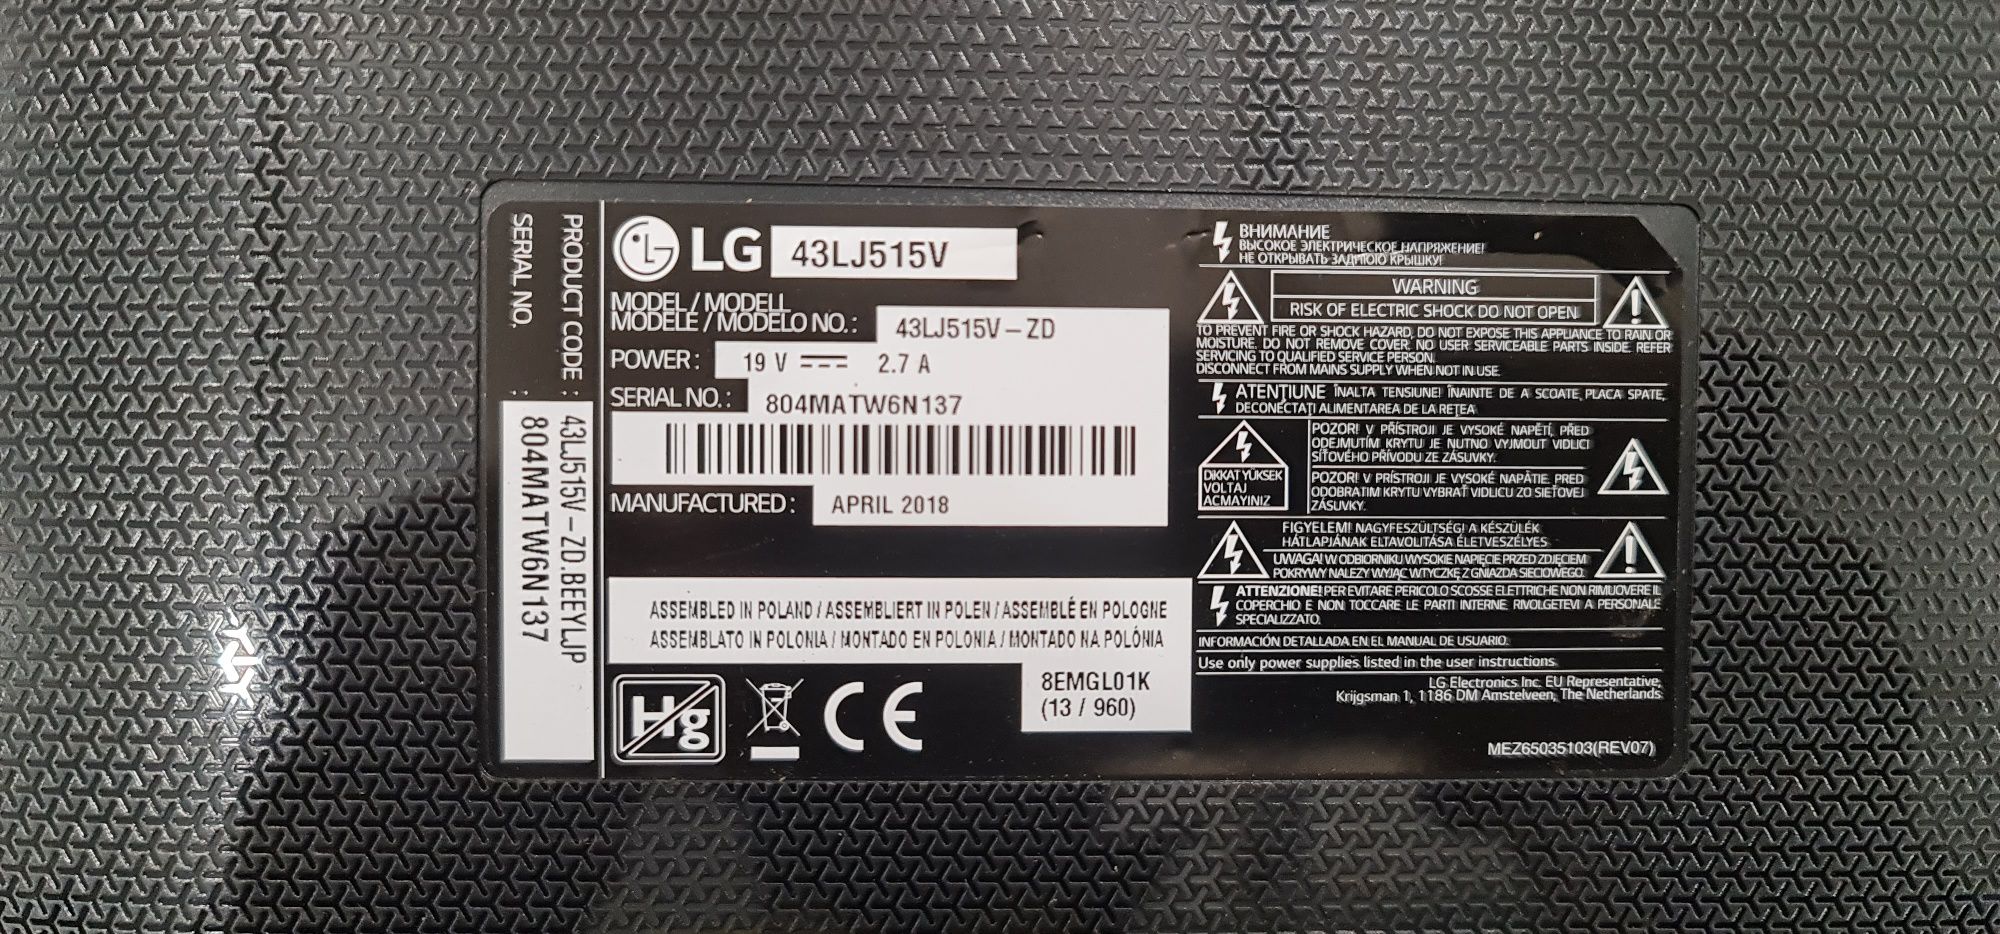 Placa LG LED 108 cm 43LJ515V si alte piese sport dezmembrez